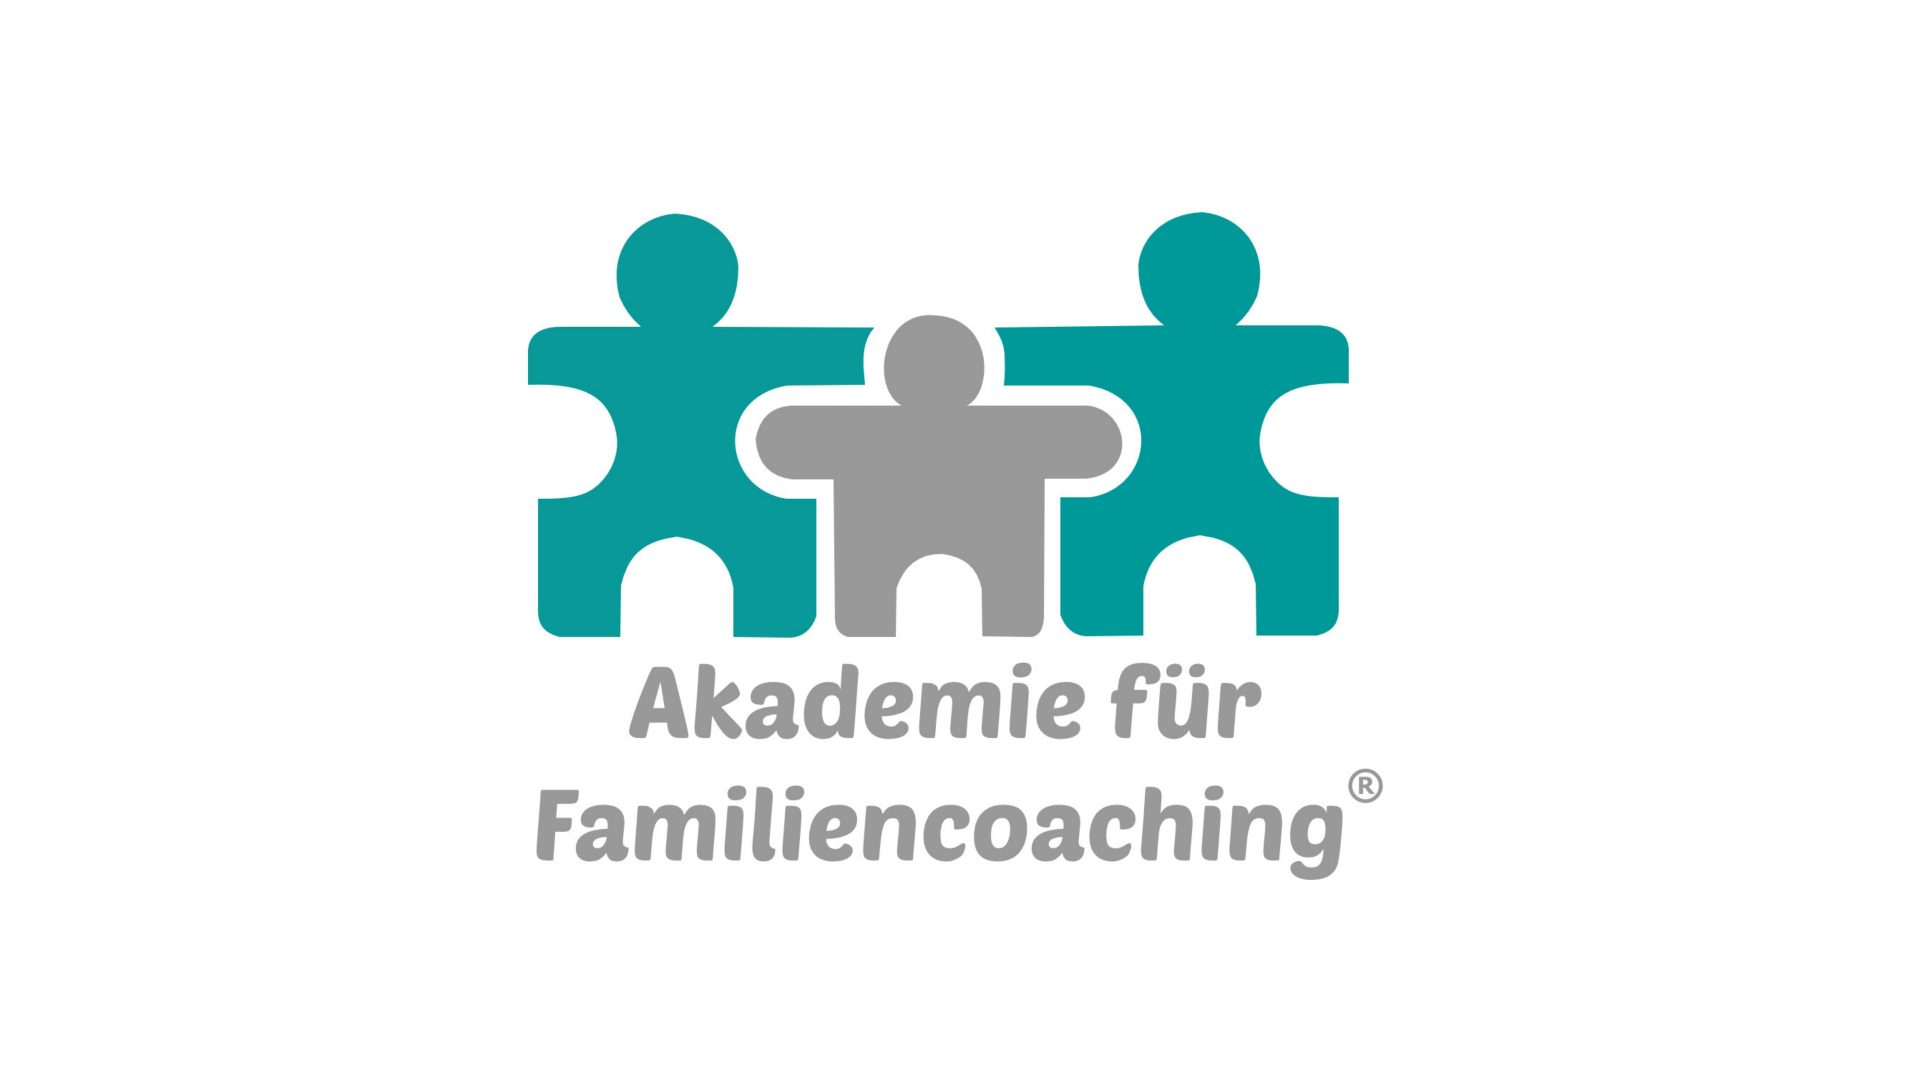 Akademie für Familiencoaching - Unser Team